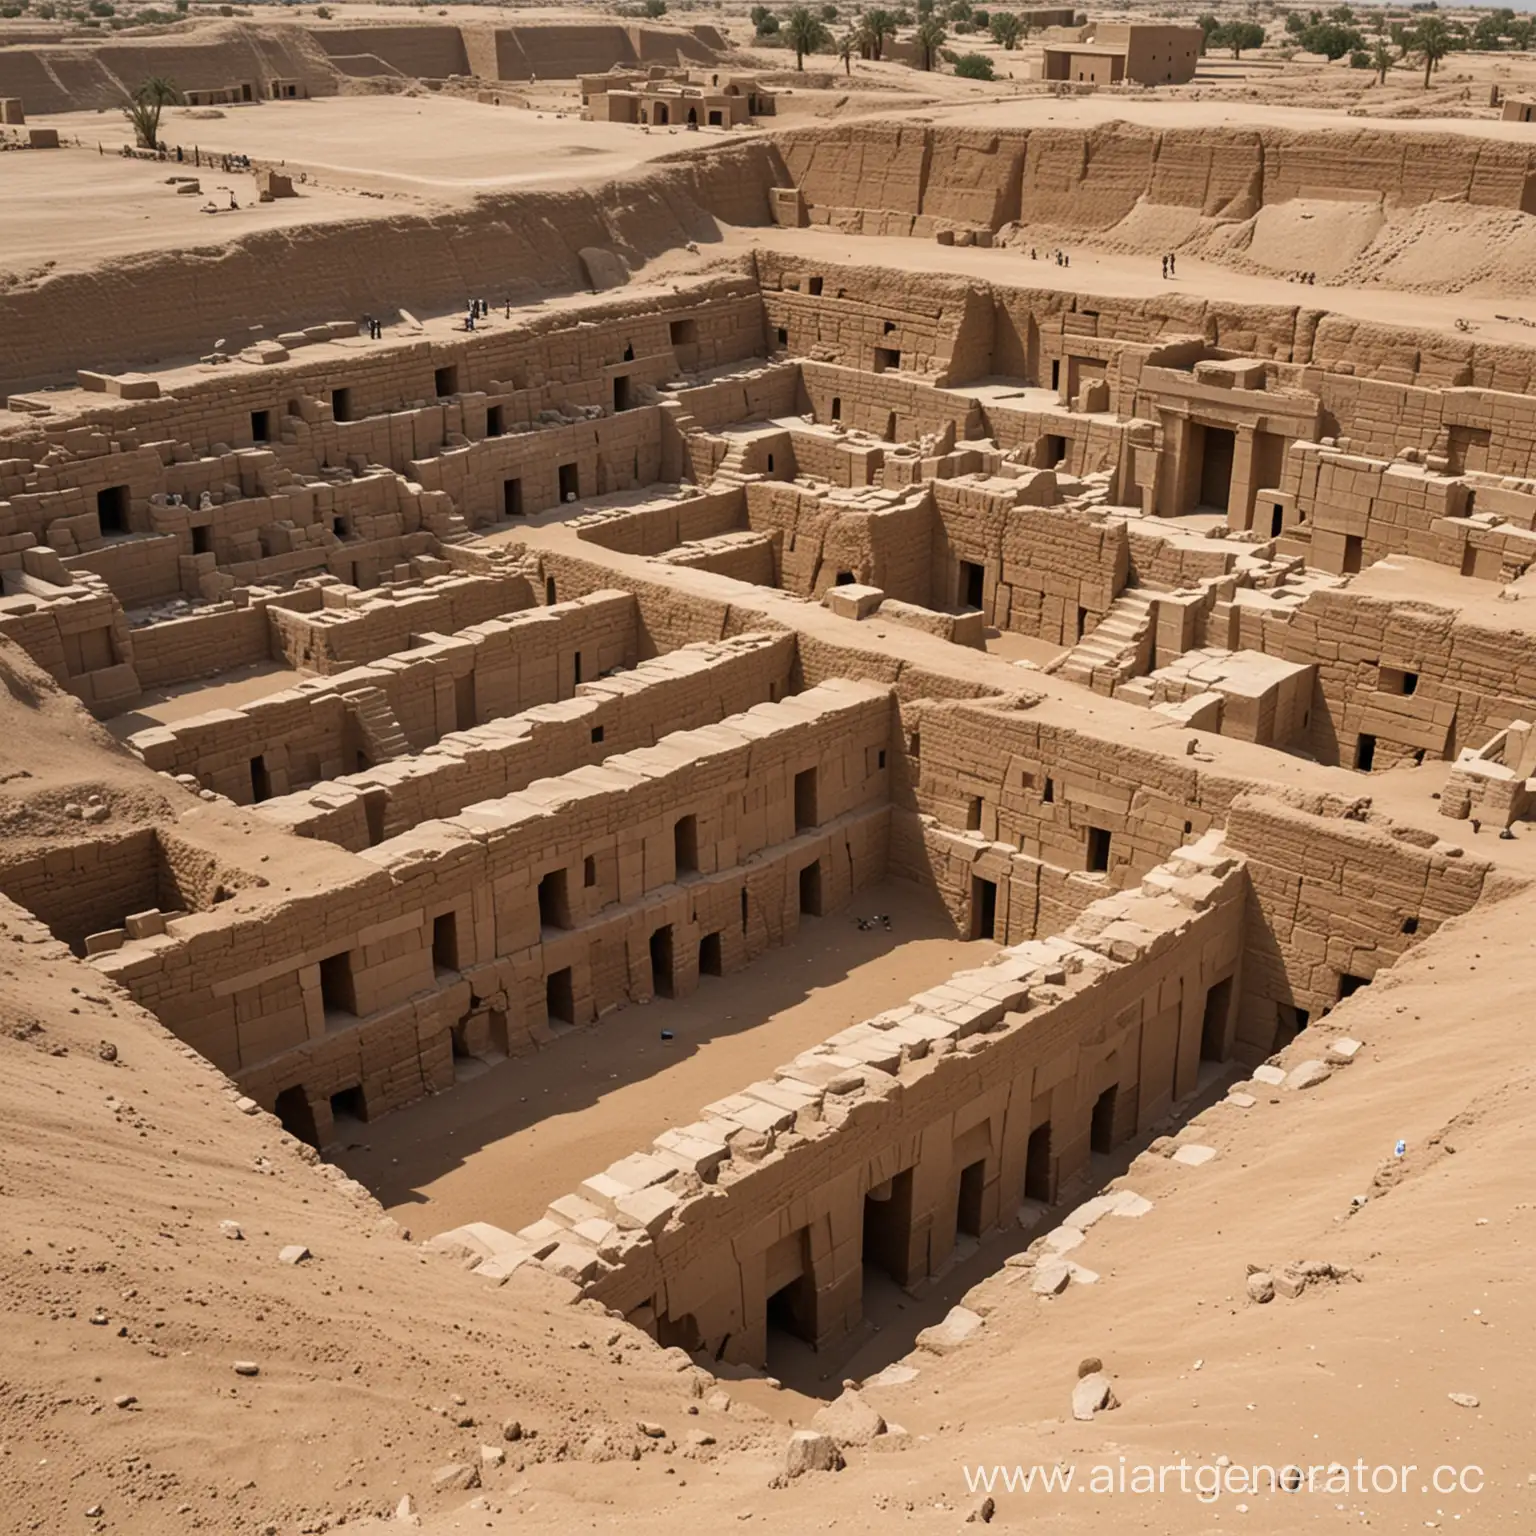 древний 10 ярусный некрополь в вавилоне,который только что откопали,и проводят осмотр,толстые стены,и высокие потолки